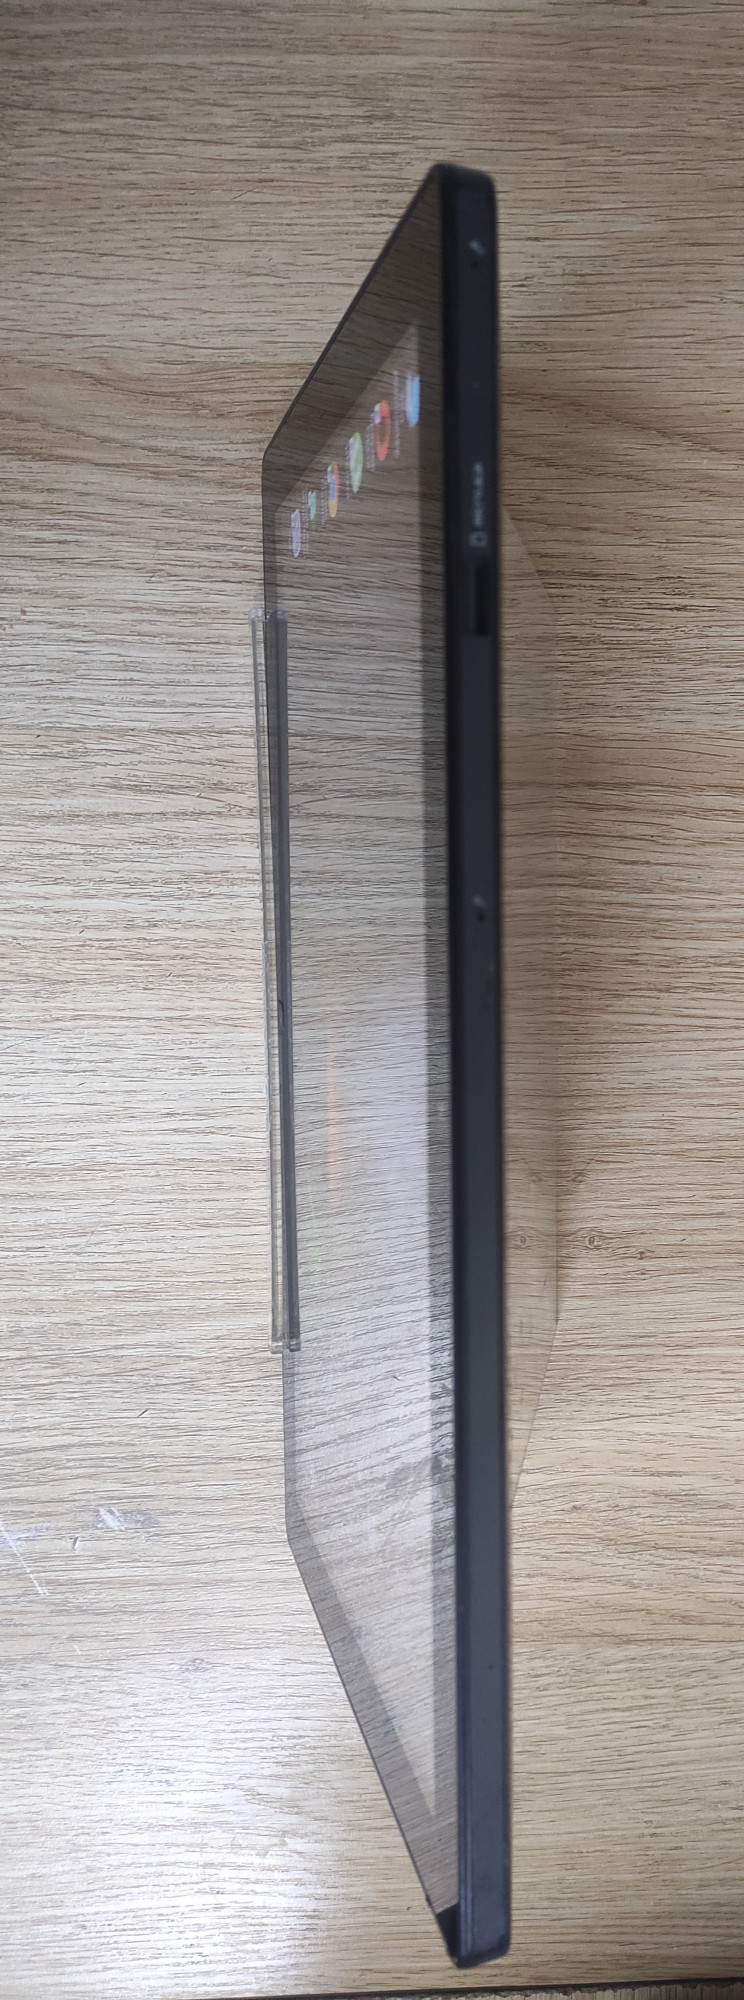 Планшет Samsung Slate PC Series 7 64GB 9